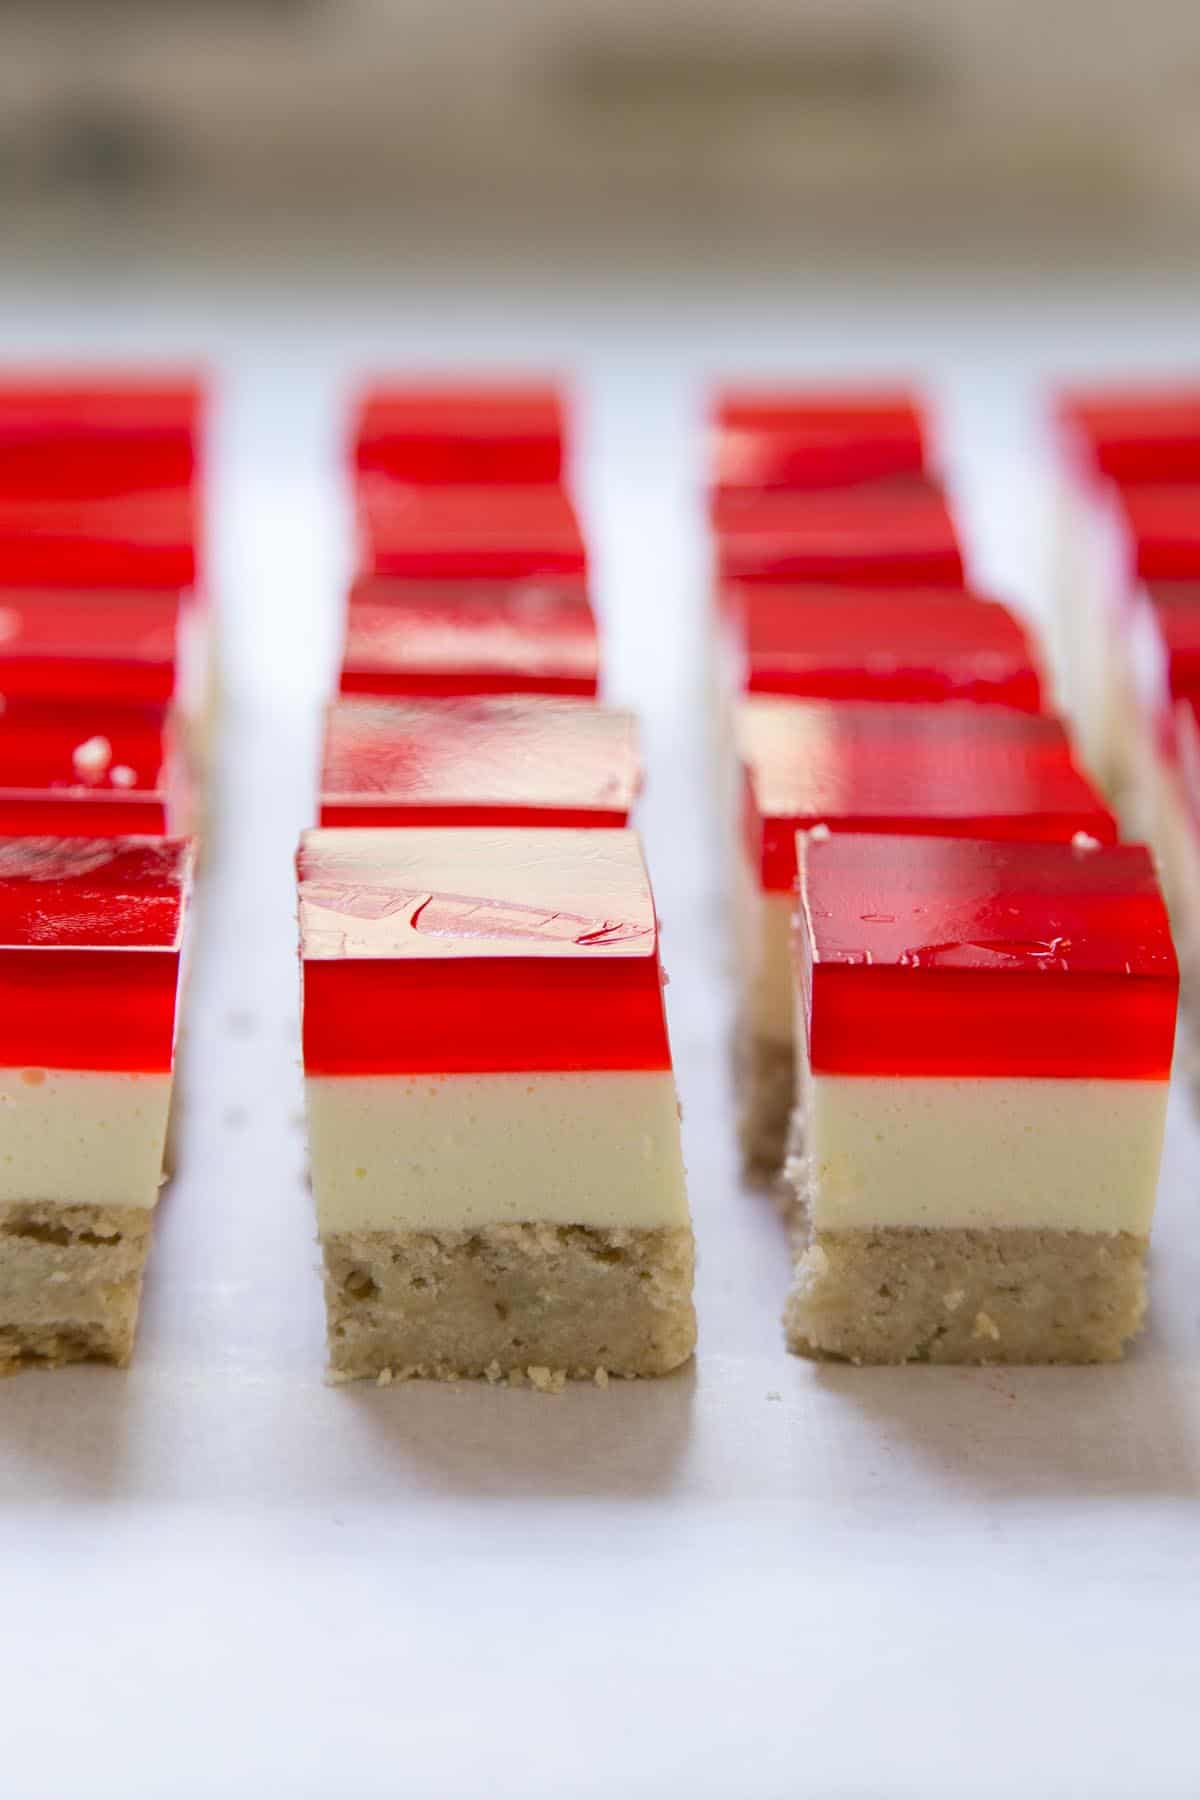 Strawberry Jello Dessert Bars cut into squares